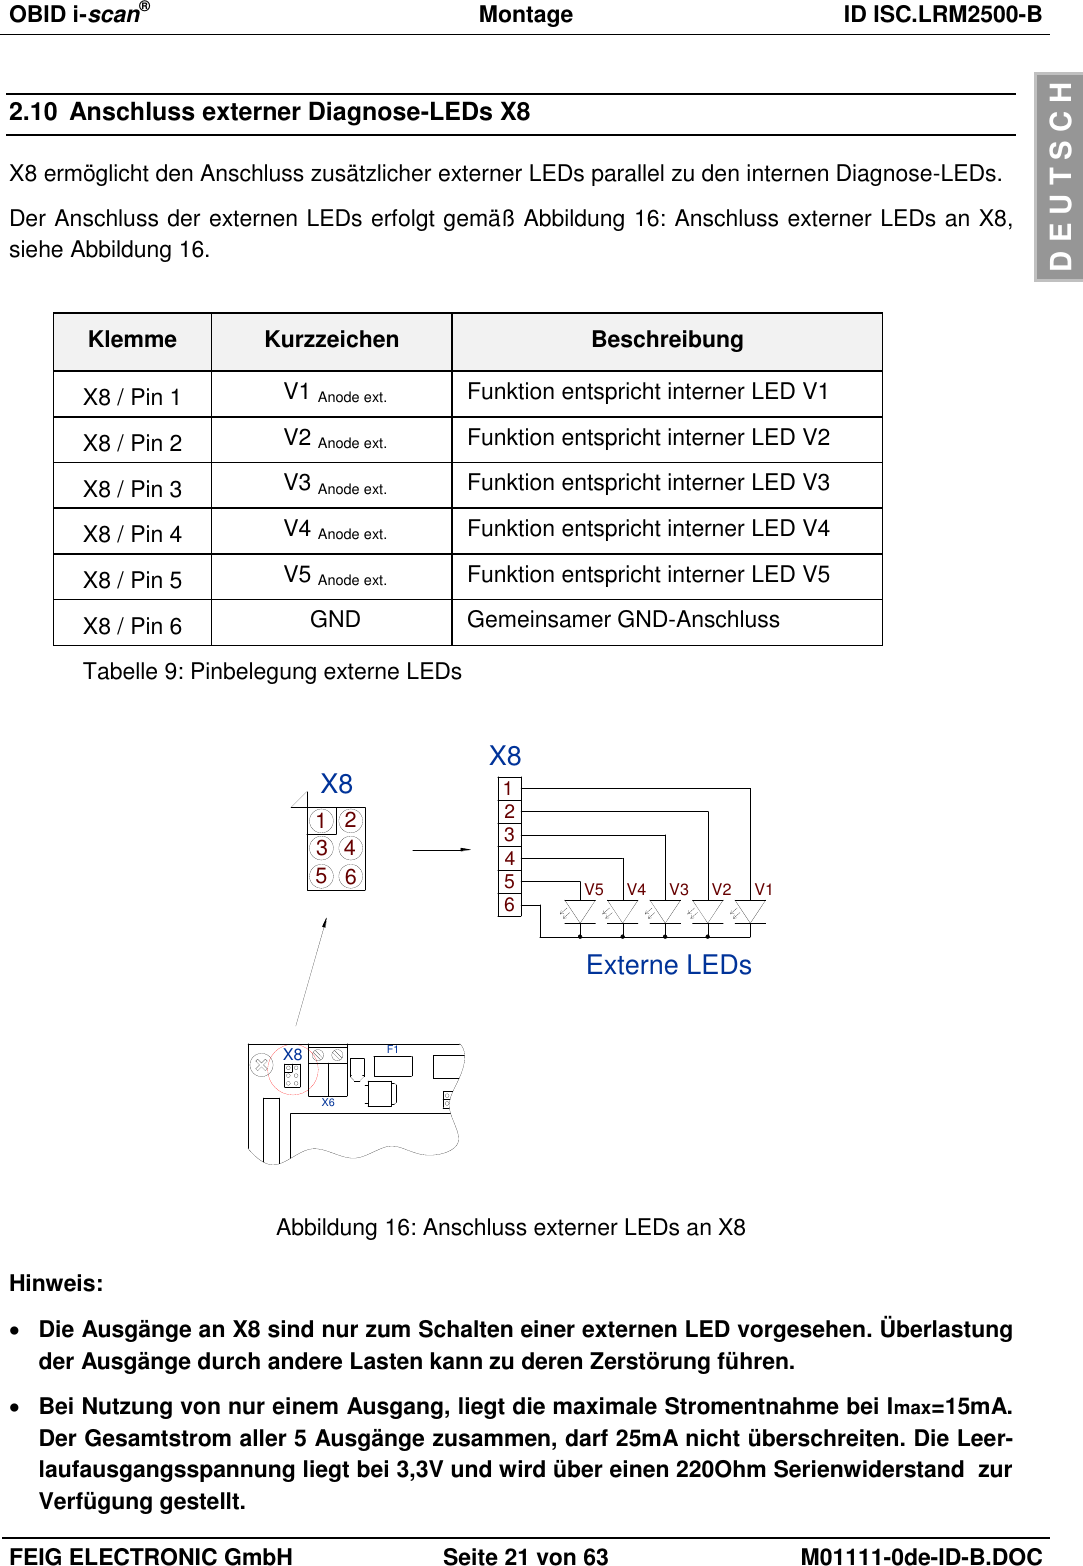 OBID i-scan®  Montage ID ISC.LRM2500-B  FEIG ELECTRONIC GmbH Seite 21 von 63 M01111-0de-ID-B.DOC  D E U T S C H 2.10  Anschluss externer Diagnose-LEDs X8 X8 ermöglicht den Anschluss zusätzlicher externer LEDs parallel zu den internen Diagnose-LEDs. Der Anschluss der externen LEDs erfolgt gemäß Abbildung 16: Anschluss externer LEDs an X8, siehe Abbildung 16.  Klemme Kurzzeichen Beschreibung X8 / Pin 1 V1 Anode ext. Funktion entspricht interner LED V1 X8 / Pin 2 V2 Anode ext. Funktion entspricht interner LED V2 X8 / Pin 3 V3 Anode ext. Funktion entspricht interner LED V3 X8 / Pin 4 V4 Anode ext. Funktion entspricht interner LED V4 X8 / Pin 5 V5 Anode ext. Funktion entspricht interner LED V5 X8 / Pin 6 GND Gemeinsamer GND-Anschluss Tabelle 9: Pinbelegung externe LEDs 53124662345V5 V4Externe LEDsX8V2V3 V1X8 1X8X6F1 Abbildung 16: Anschluss externer LEDs an X8 Hinweis:  Die Ausgänge an X8 sind nur zum Schalten einer externen LED vorgesehen. Überlastung der Ausgänge durch andere Lasten kann zu deren Zerstörung führen.   Bei Nutzung von nur einem Ausgang, liegt die maximale Stromentnahme bei Imax=15mA. Der Gesamtstrom aller 5 Ausgänge zusammen, darf 25mA nicht überschreiten. Die Leer-laufausgangsspannung liegt bei 3,3V und wird über einen 220Ohm Serienwiderstand  zur Verfügung gestellt. 